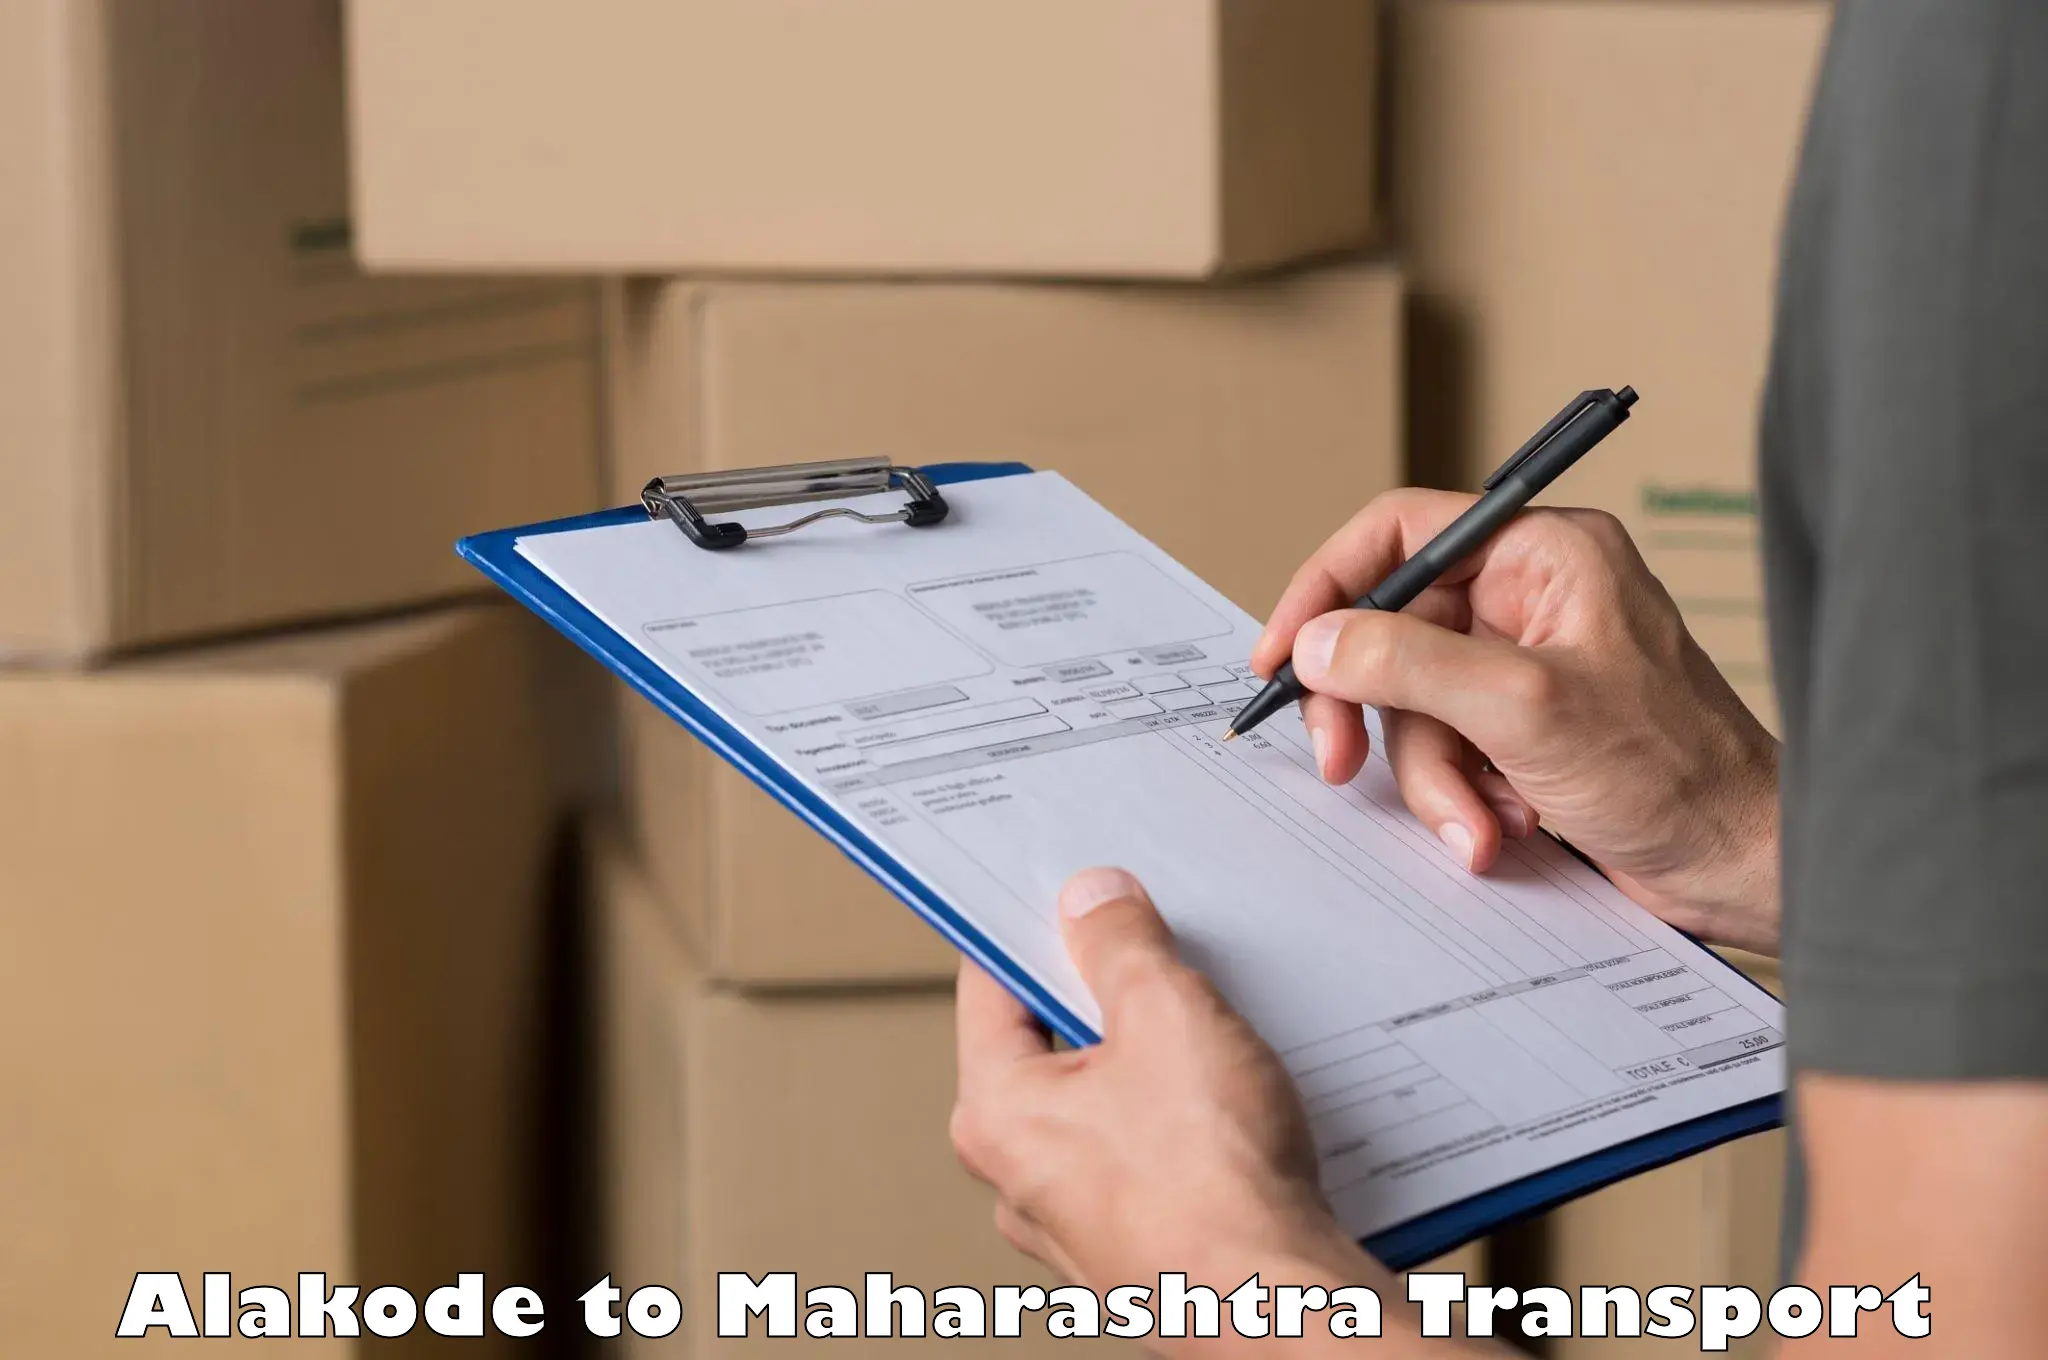 India truck logistics services Alakode to IIT Mumbai